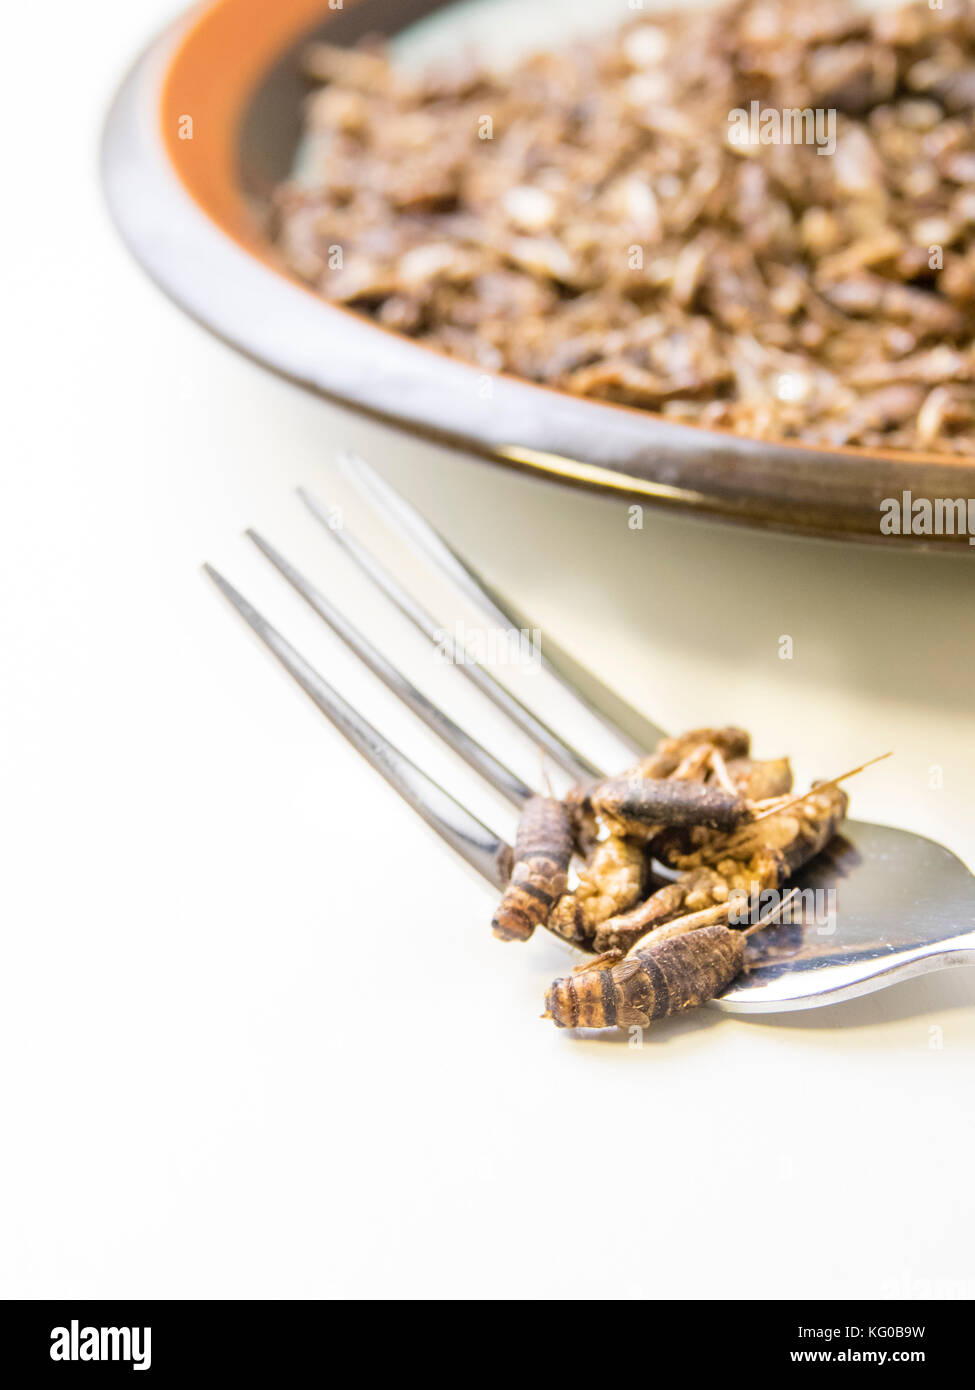 Grillen auf dem Teller in der Küche. Essbare Insekten als Lebensmittel mit Eiweiß und Ernährung gefüllt. Stockfoto